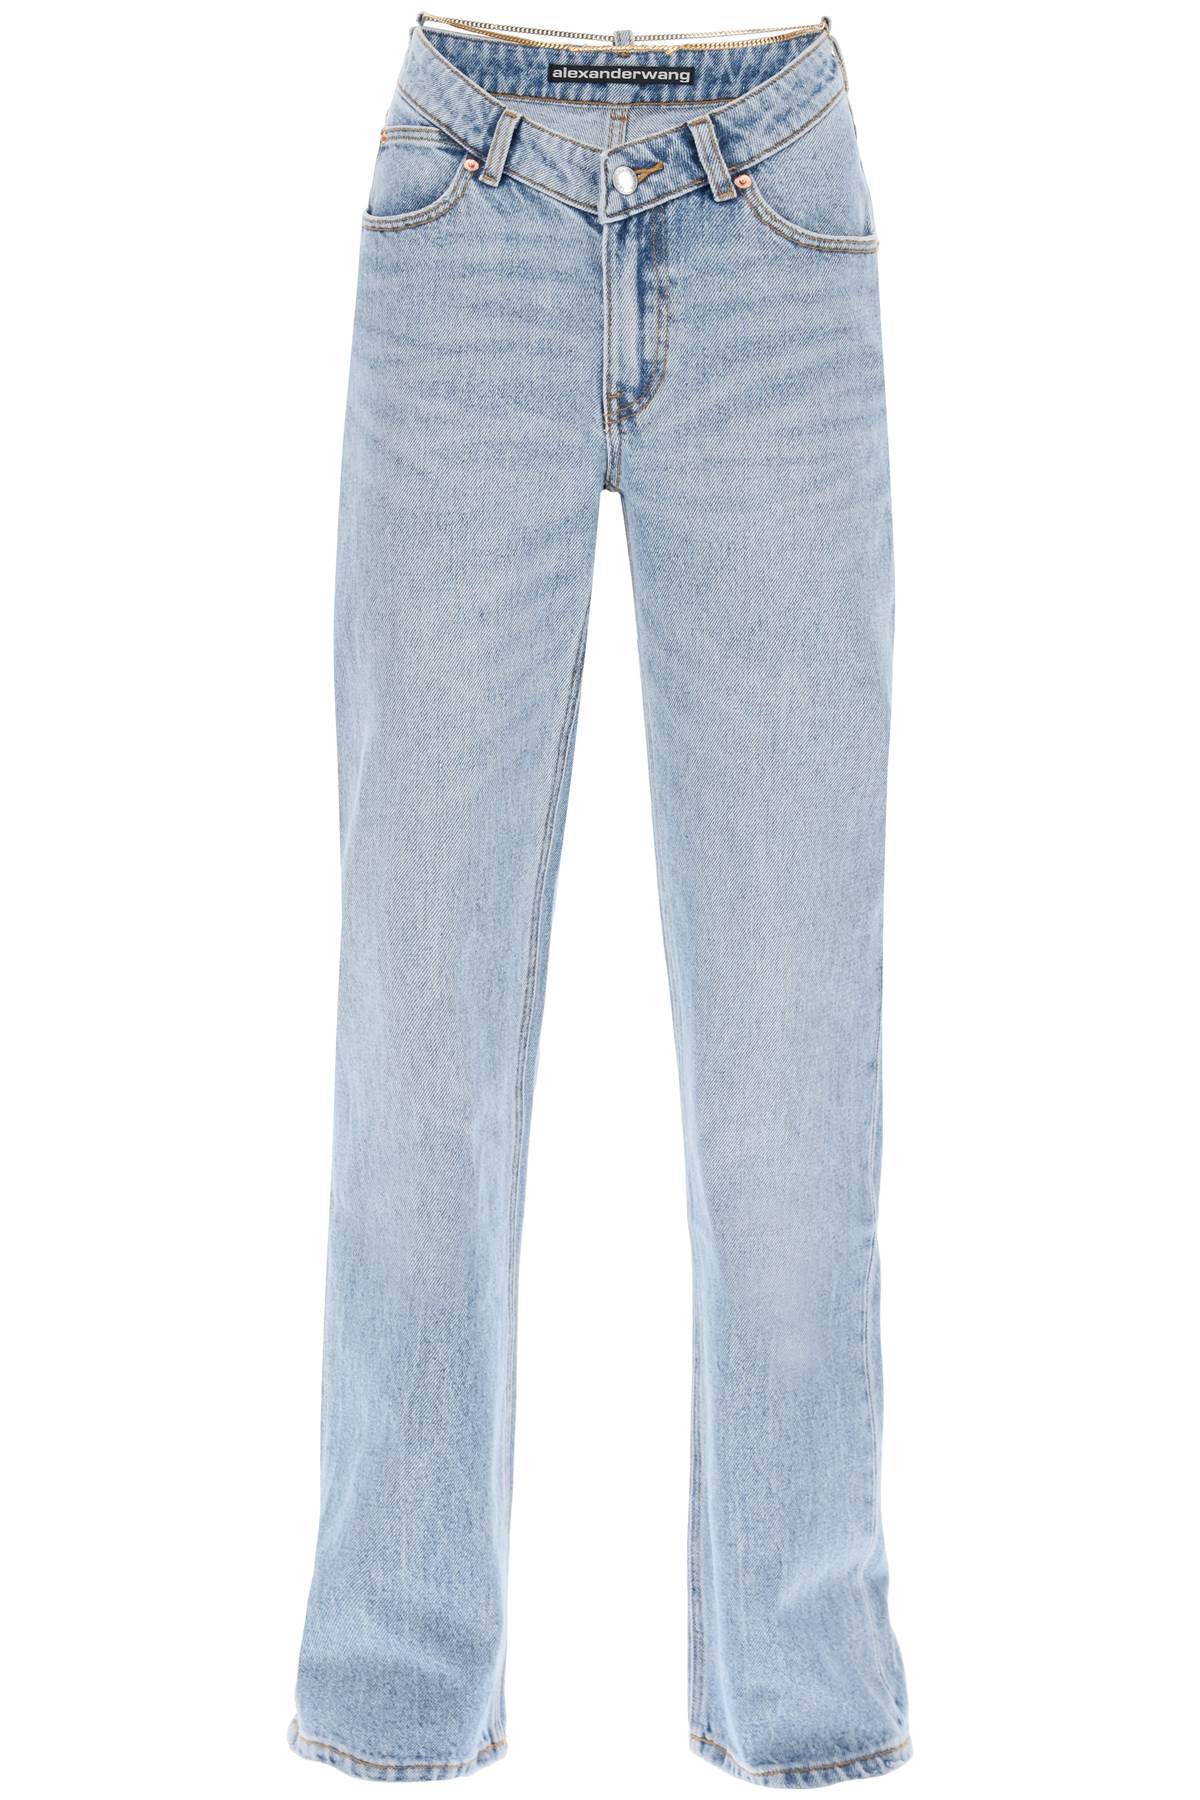 Alexander Wang ALEXANDER WANG asymmetric waist jeans with chain detail.